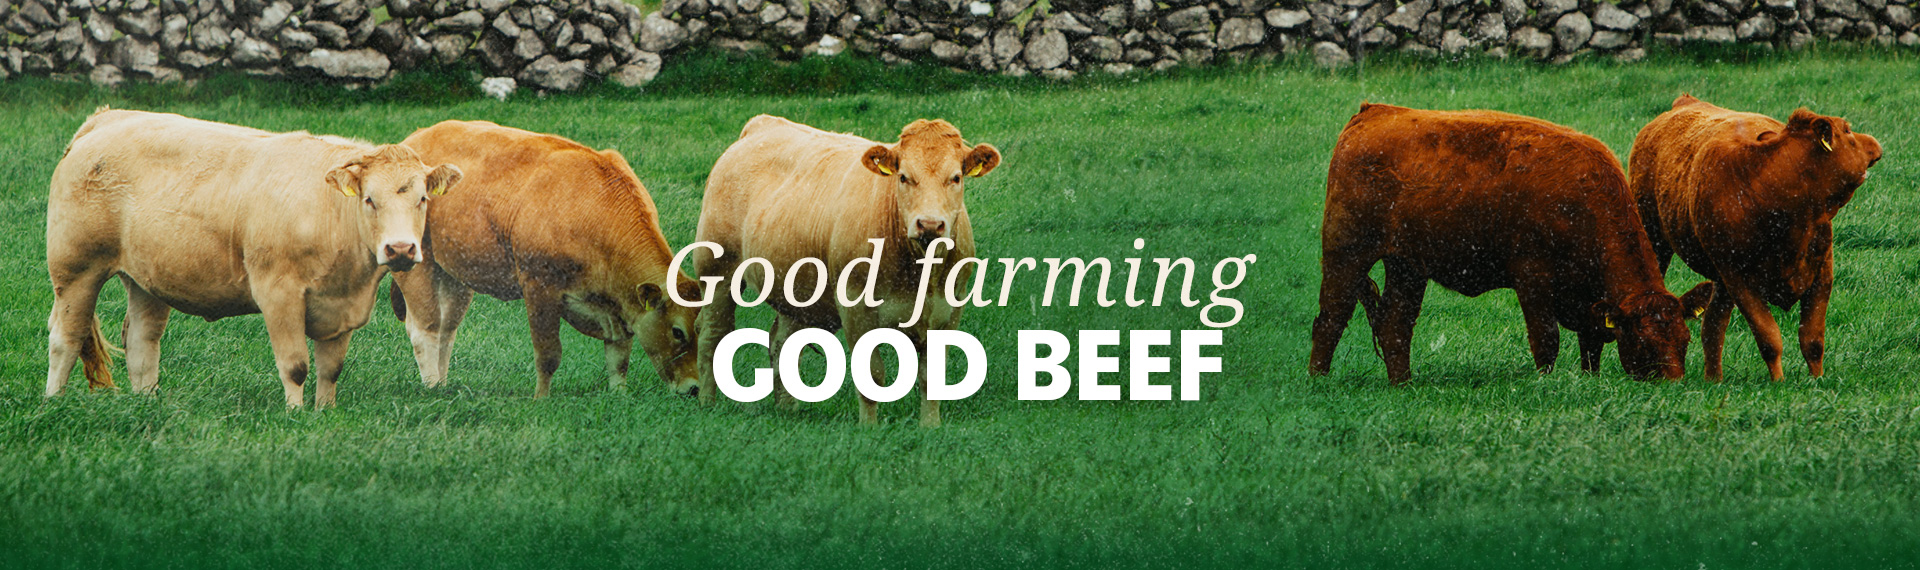 Good farming, good beef